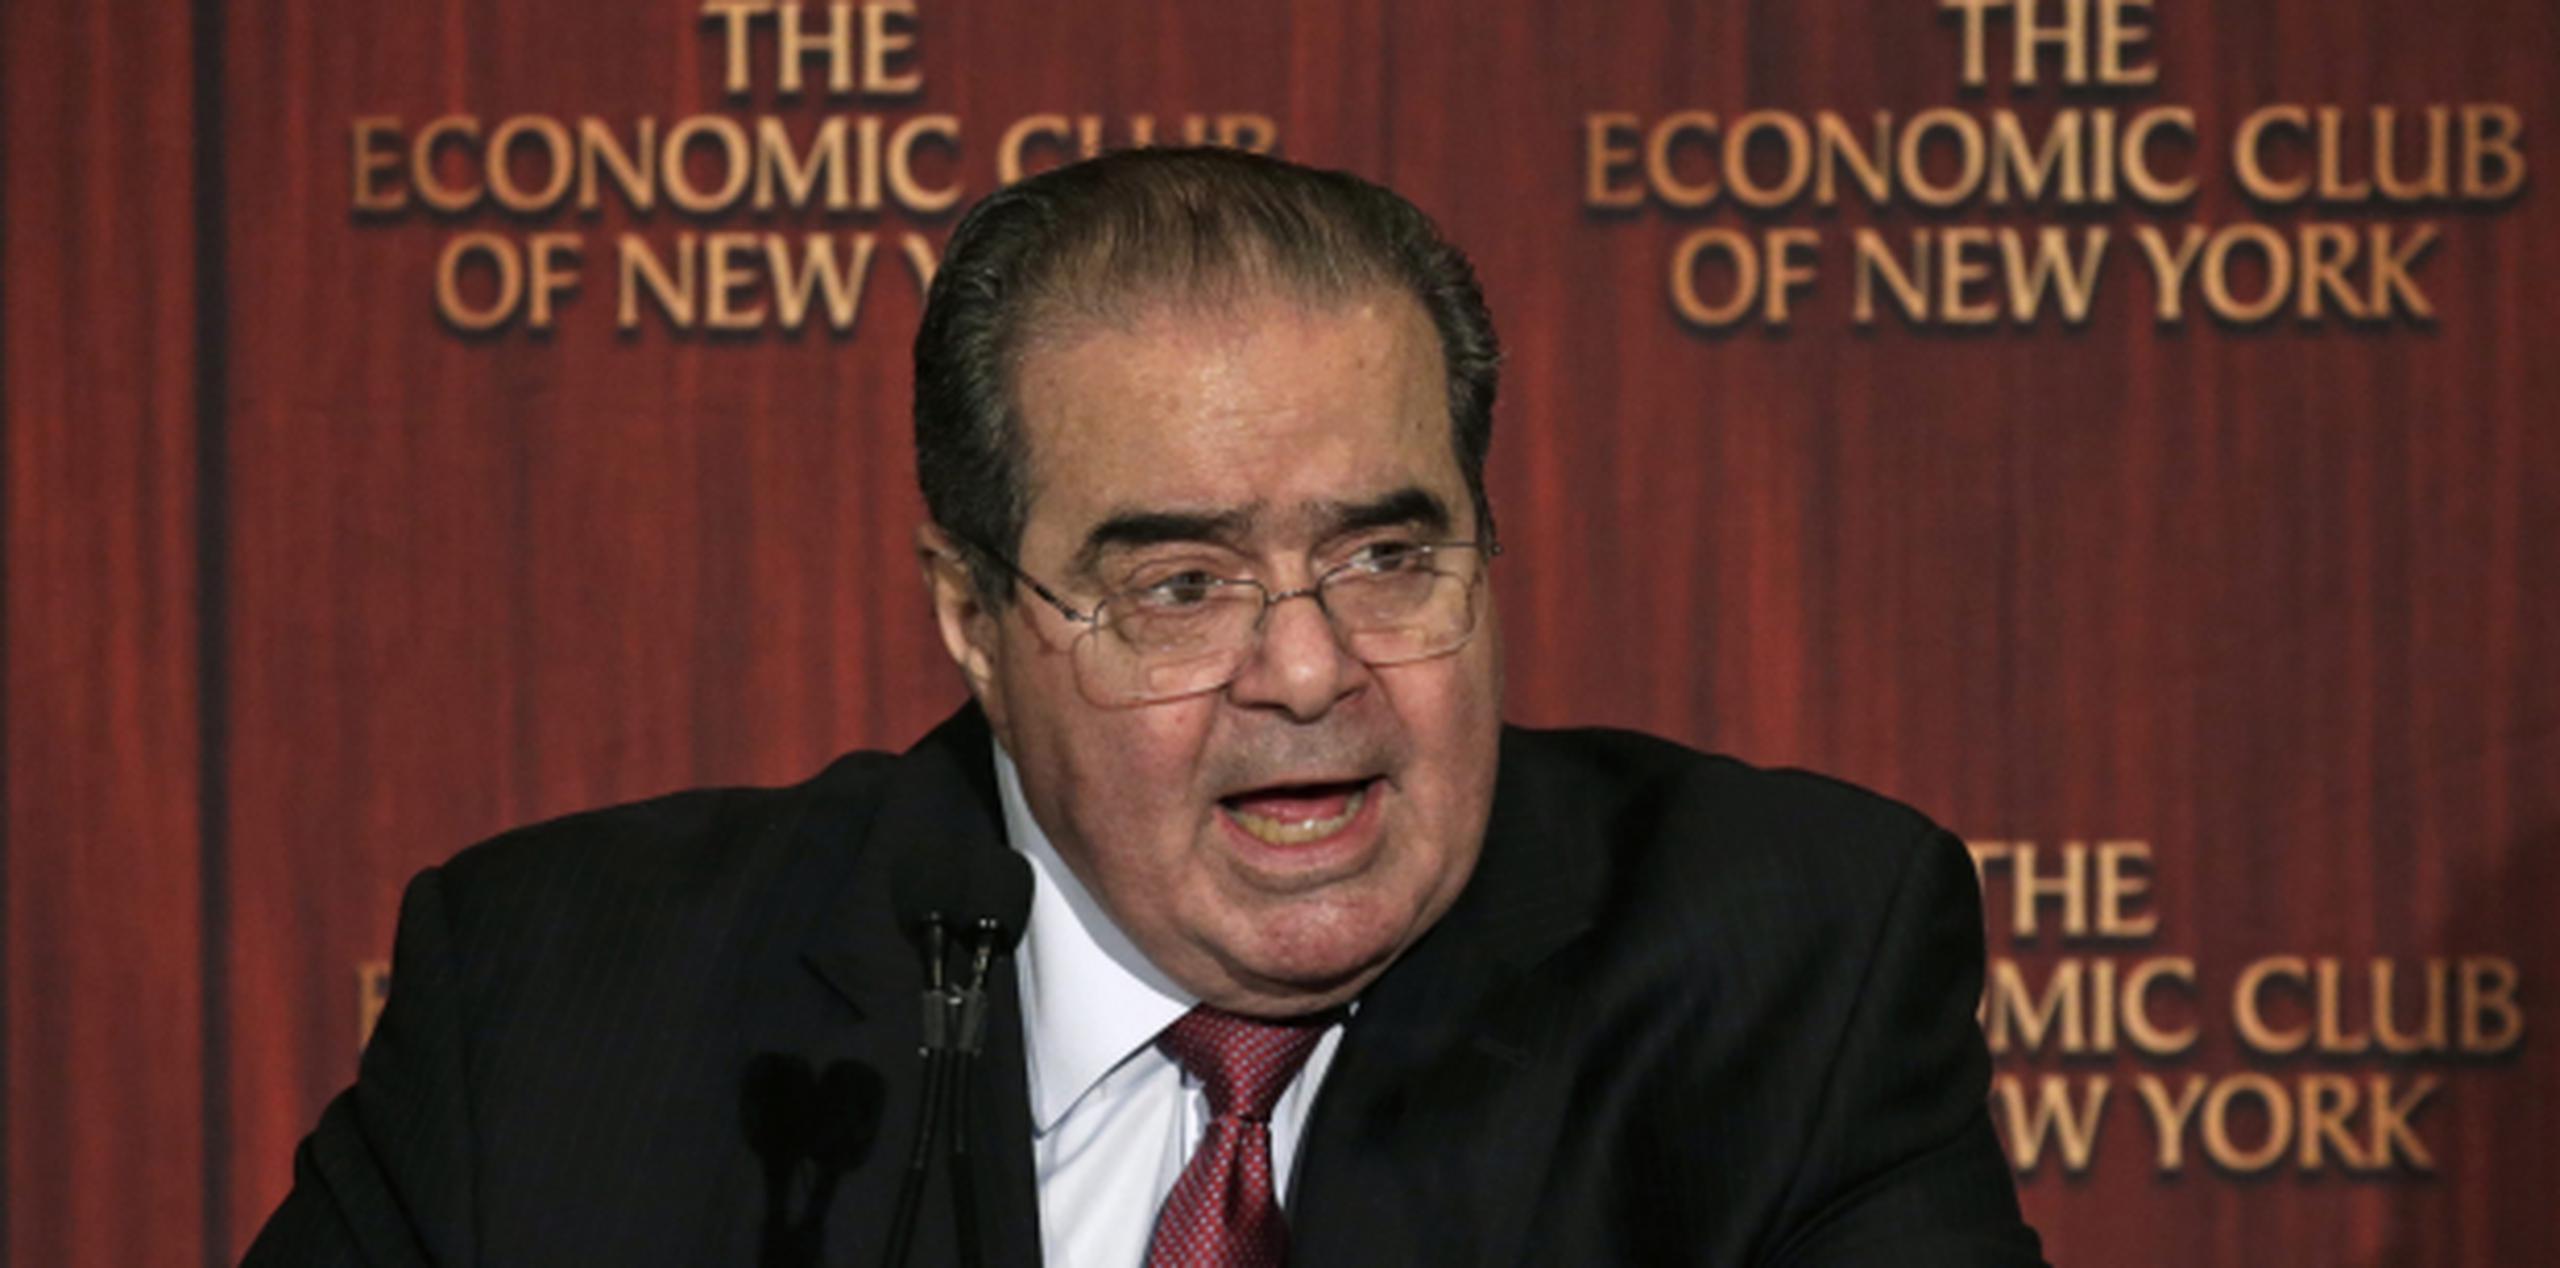 El juez Antonin Scalia era conocido por sus posiciones conservadoras. (EFE/Peter Foley)